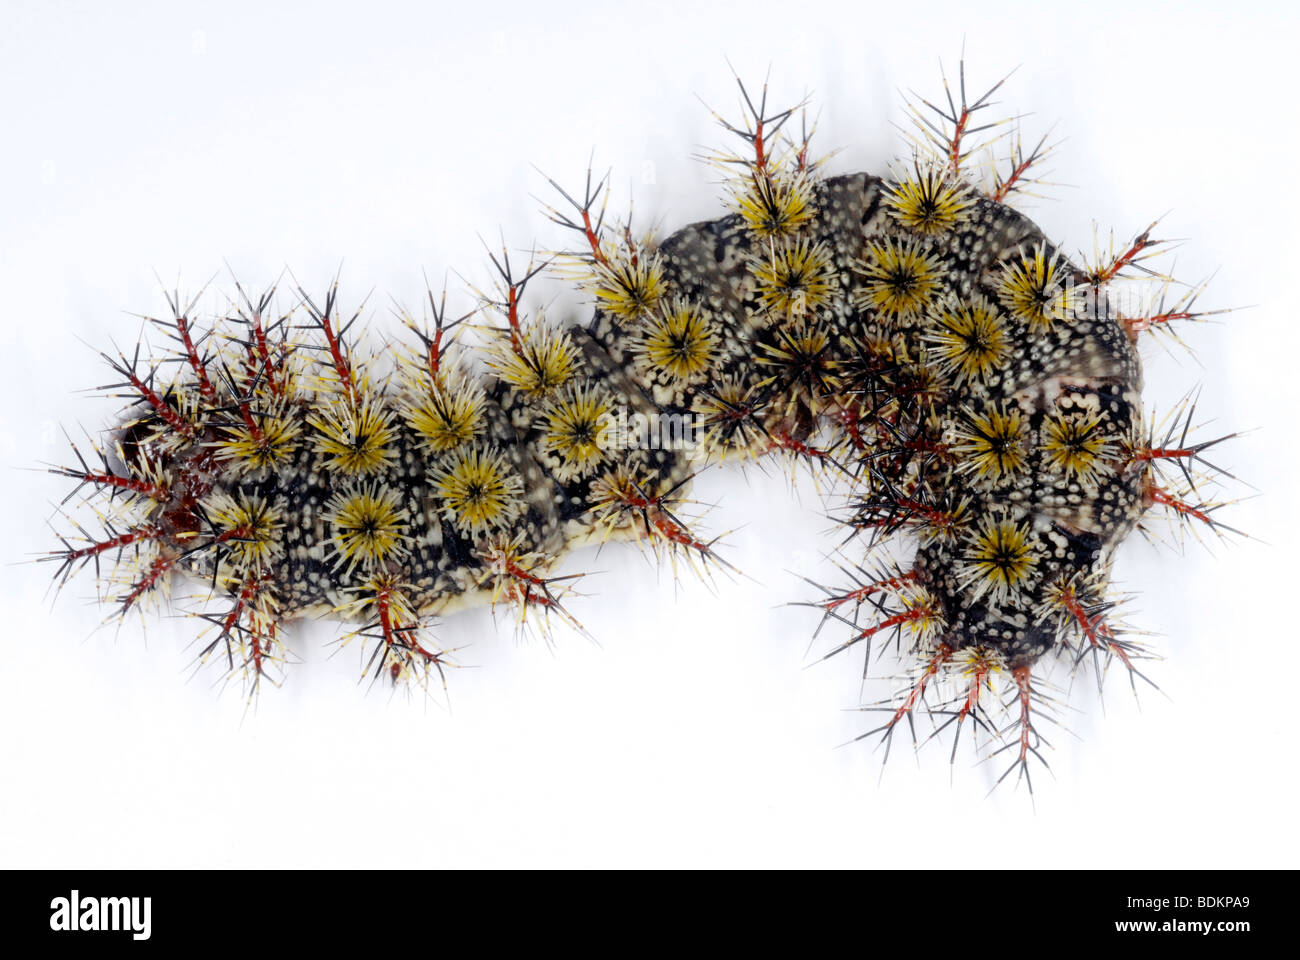 Les chenilles de papillon mâle, une espèce d'épines empoisonnées Banque D'Images